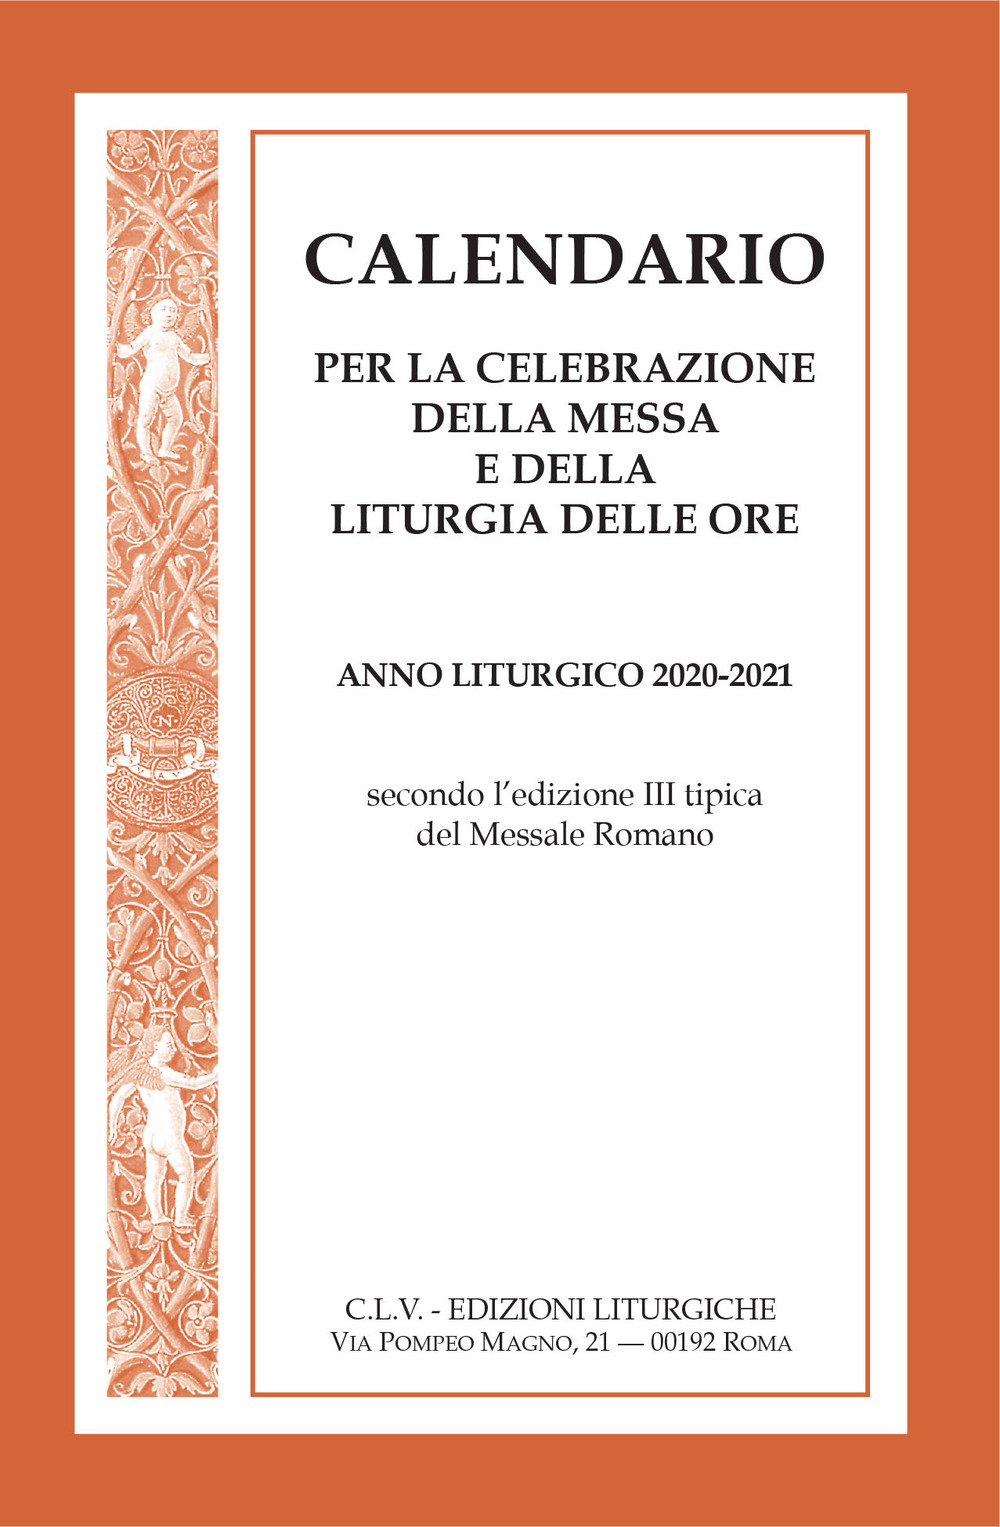 Calendario per la celebrazione della messa e della liturgia delle ore. Anno liturgico 2020-2021, secondo l'edizione III tipica del Messale Romano